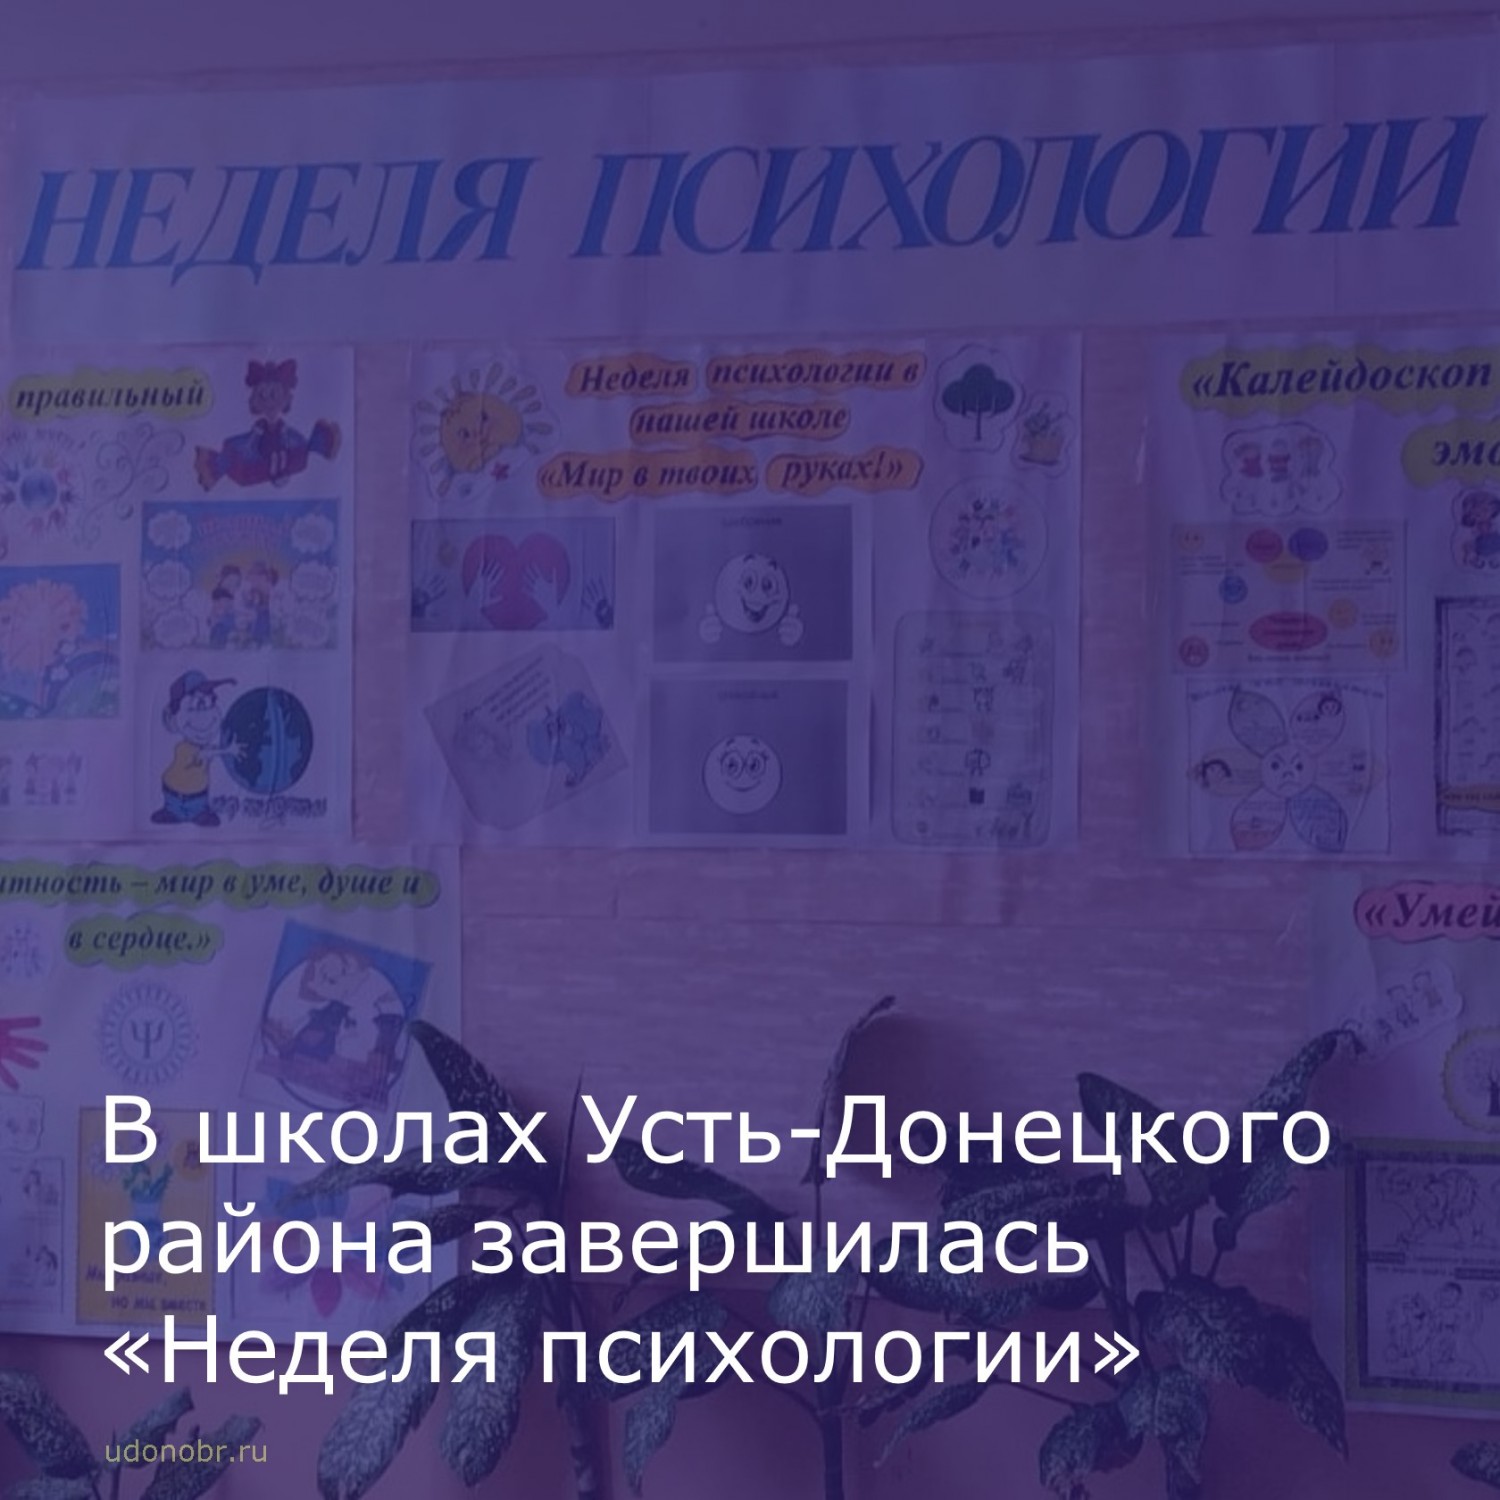 В Усть-Донецких школах завершилась традиционная «Неделя психологии».